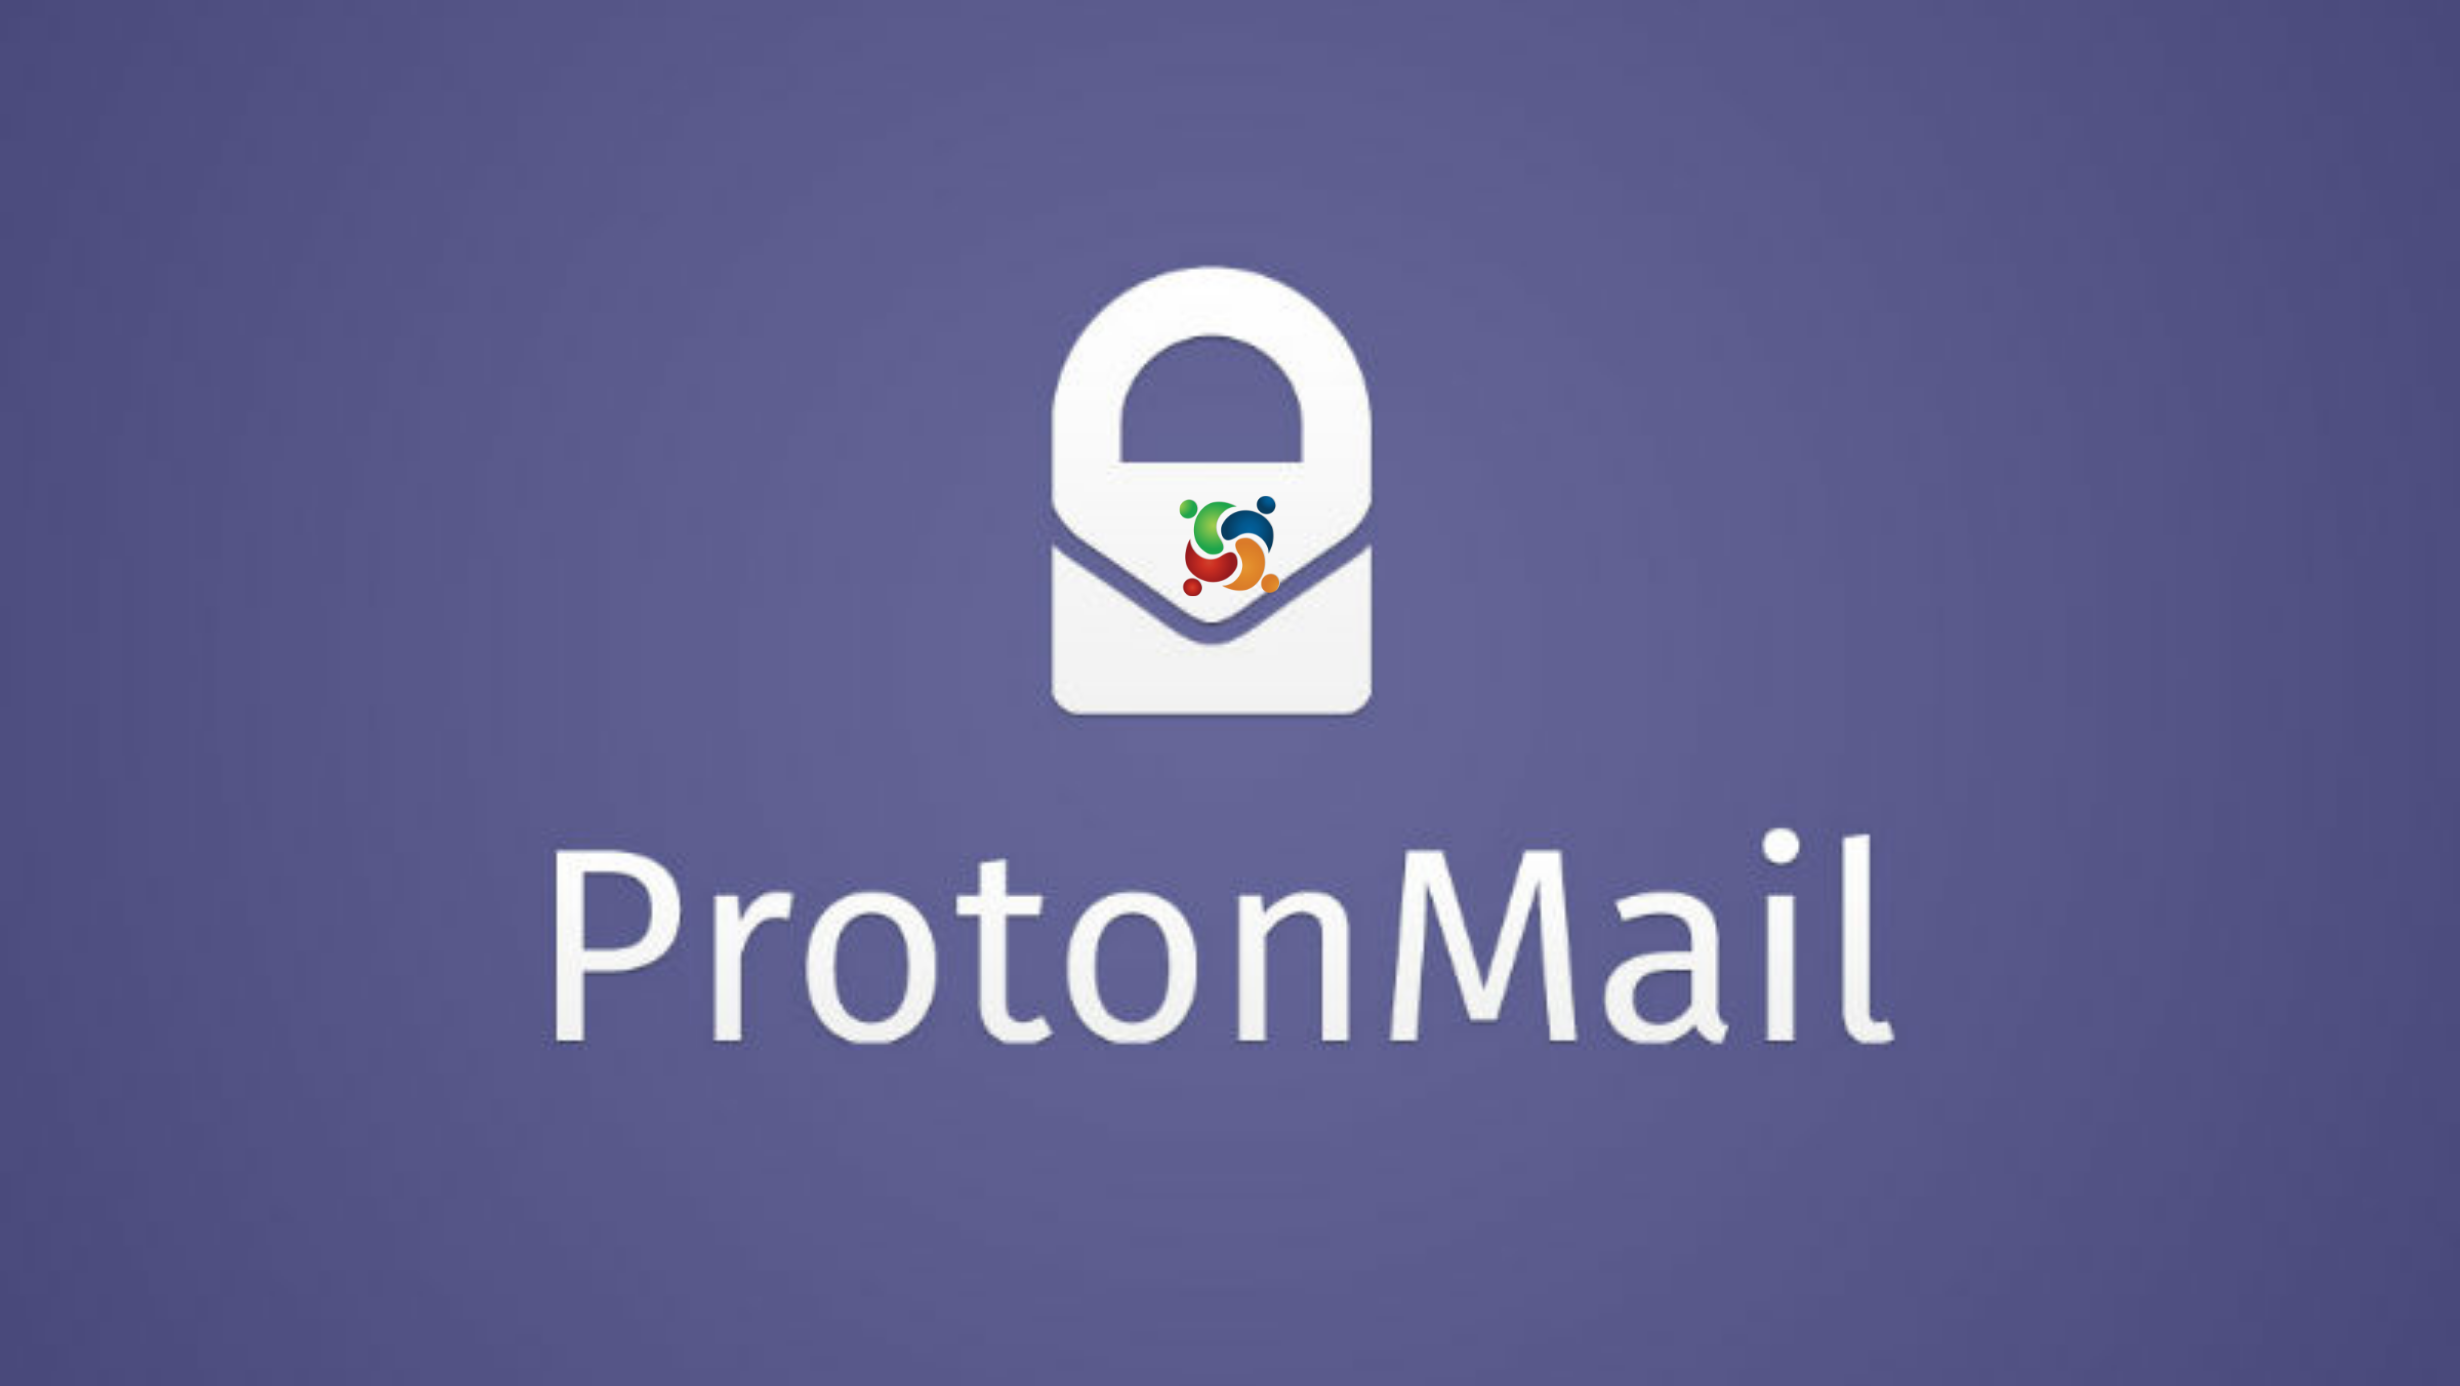 Proton tenta se tornar o Google sem uso indiscriminado de dados dos usuários